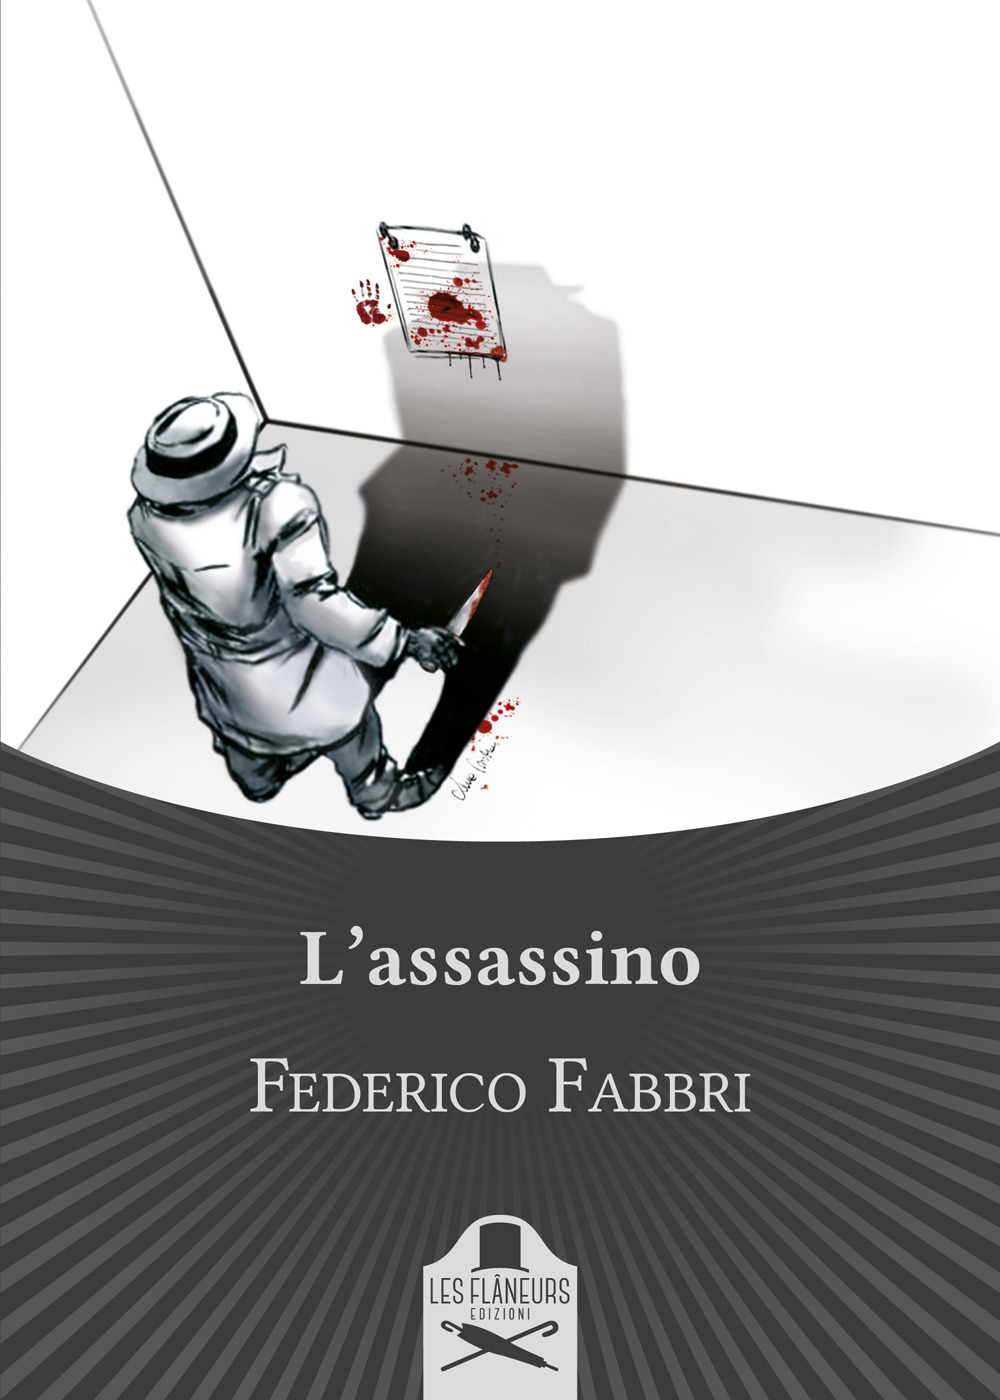 Libri Federico Fabbri - L' Assassino NUOVO SIGILLATO, EDIZIONE DEL 07/05/2019 SUBITO DISPONIBILE